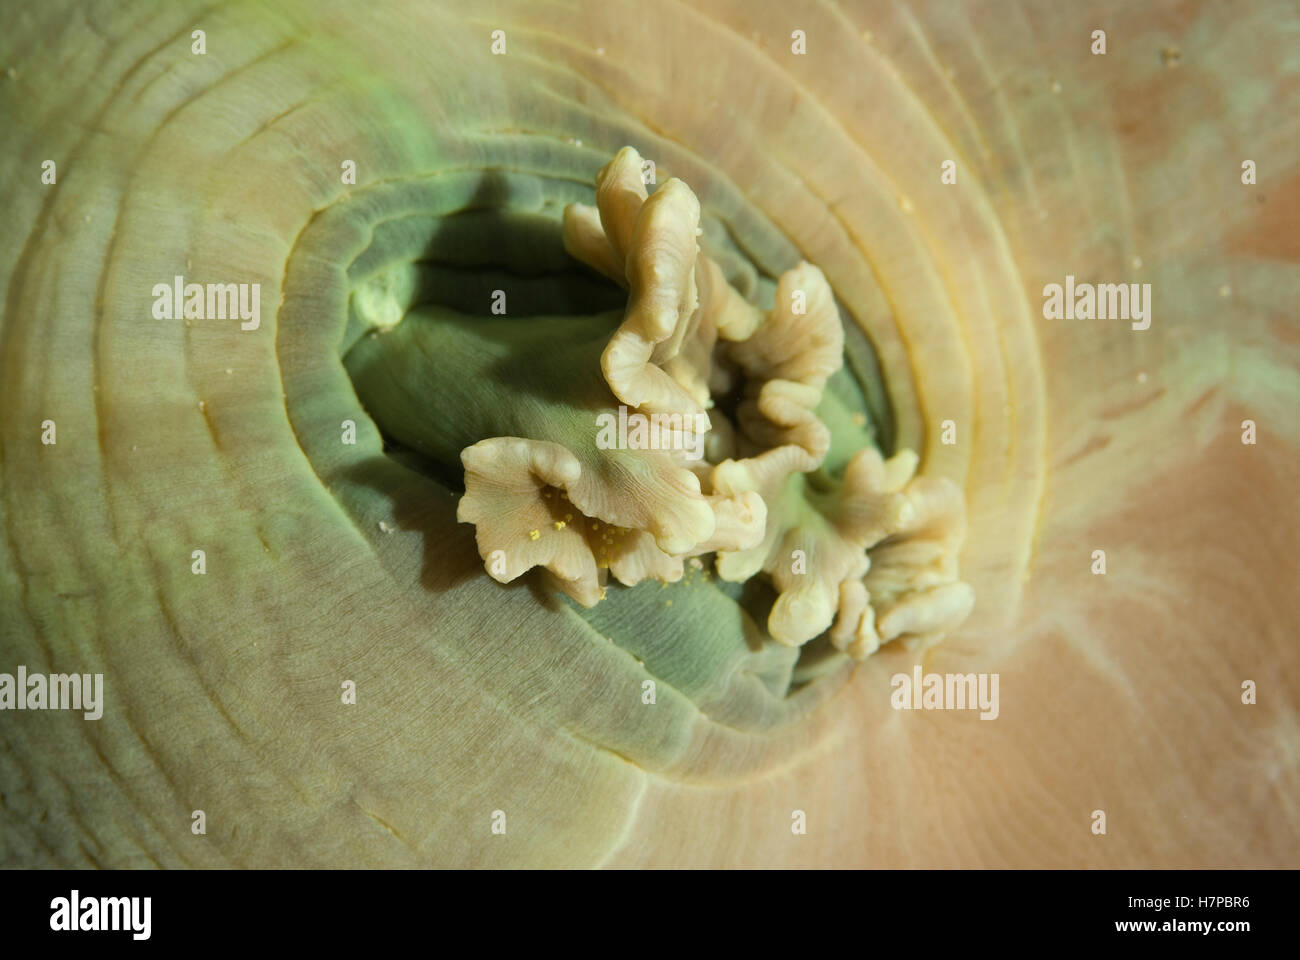 Tasse géante (Amplexidiscus fenestrafer corail champignon) étroitement liées à des anémones de mer, îles Raja Ampat, Indonésie Banque D'Images